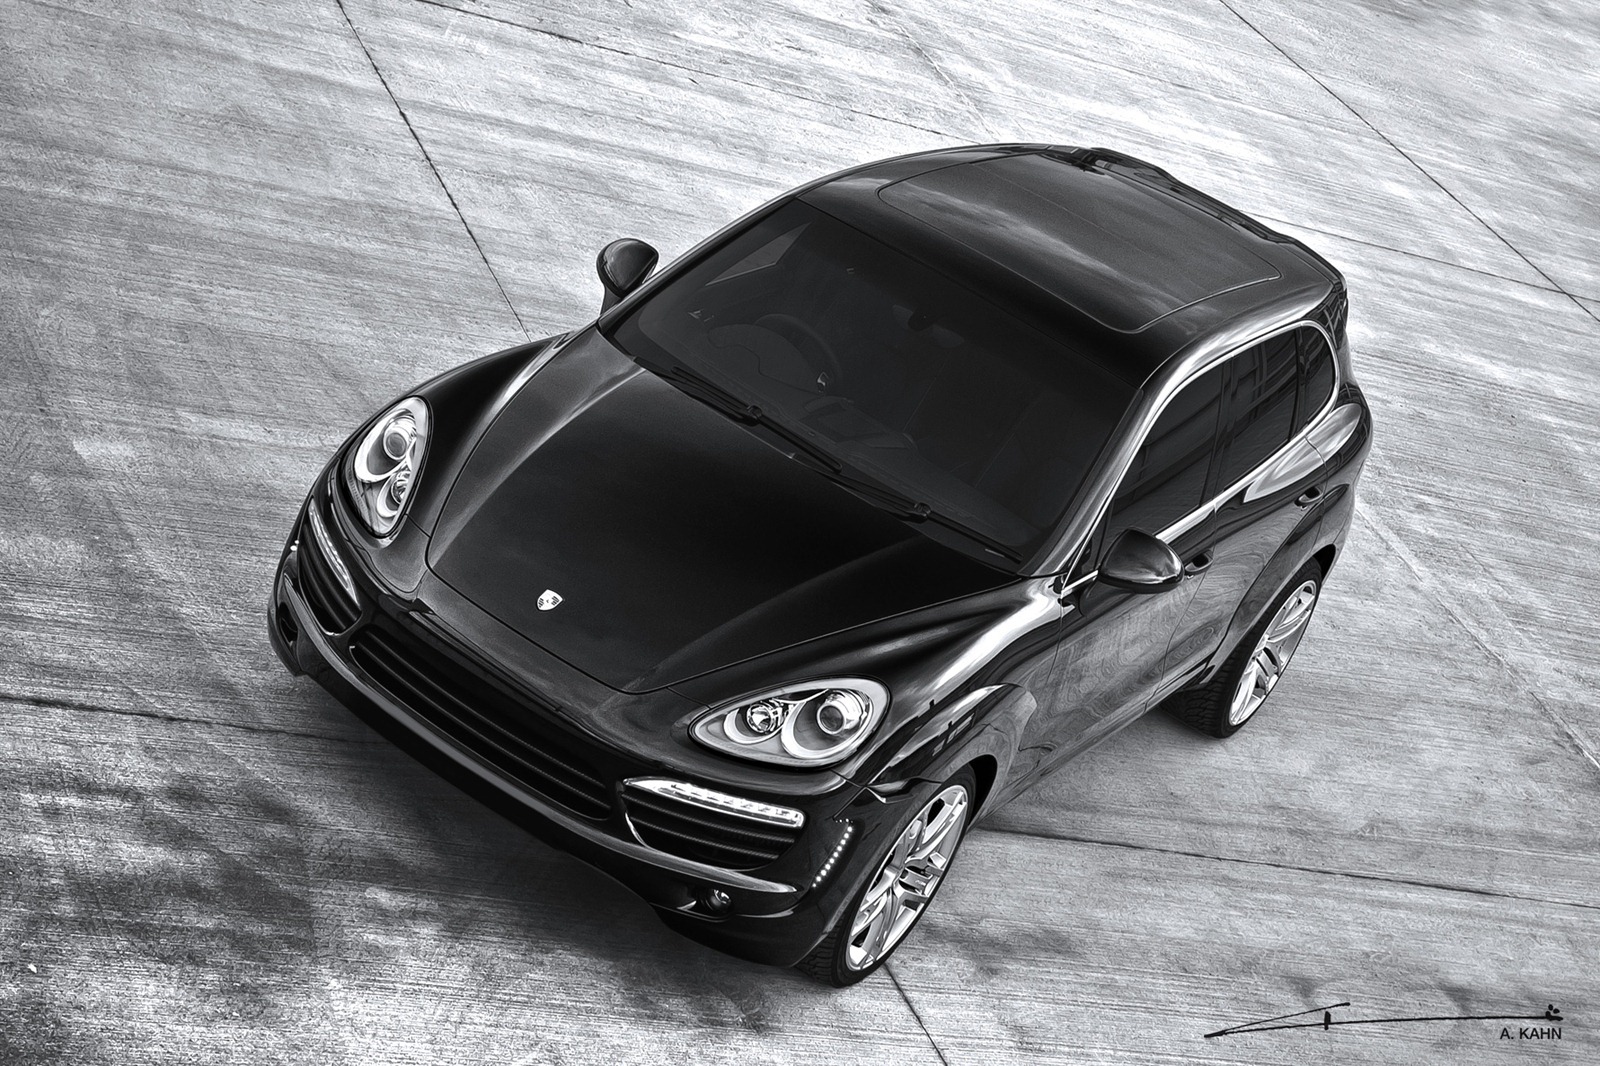 Project Kahn unveils new Porsche Cayenne tuning kit